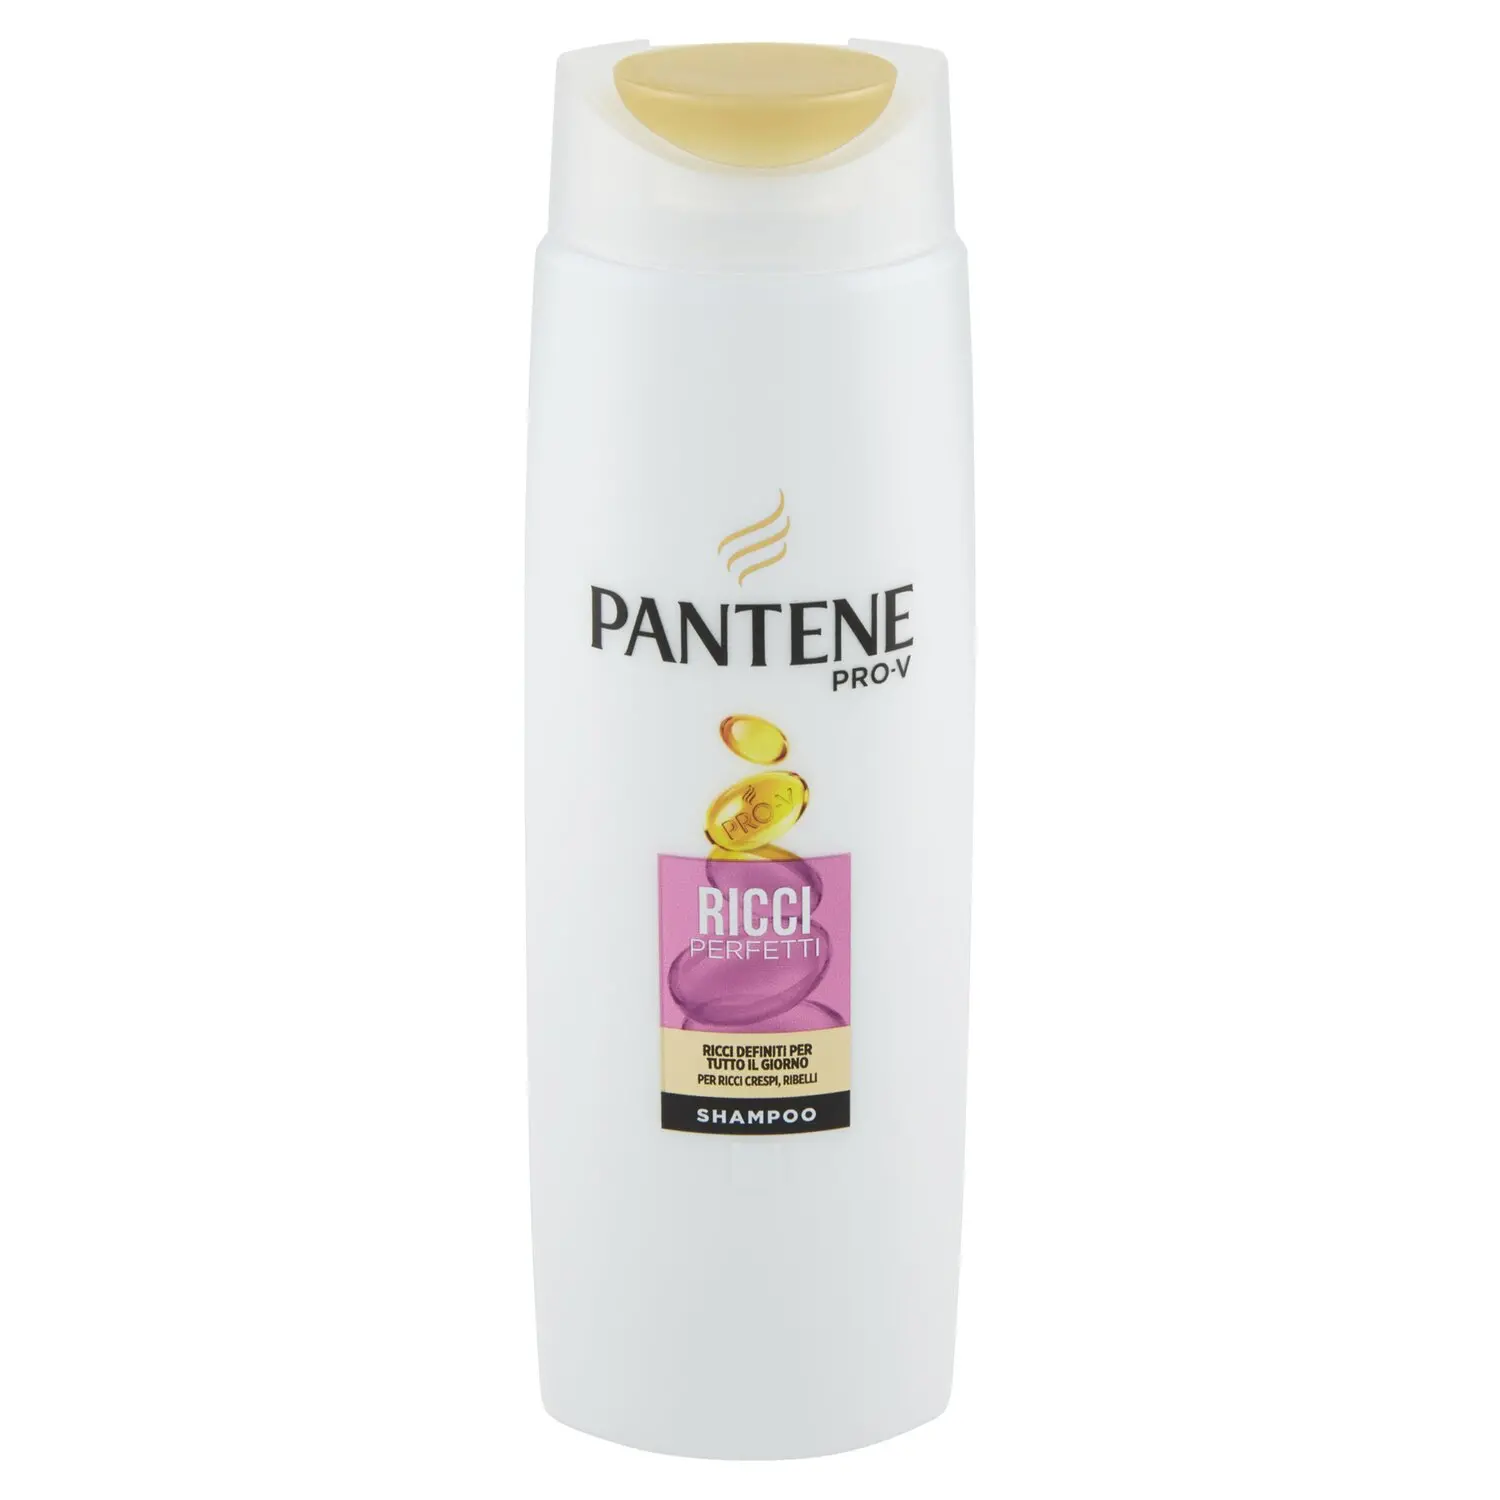 Pantene Shampoo Ricci Perfetti 250 ml